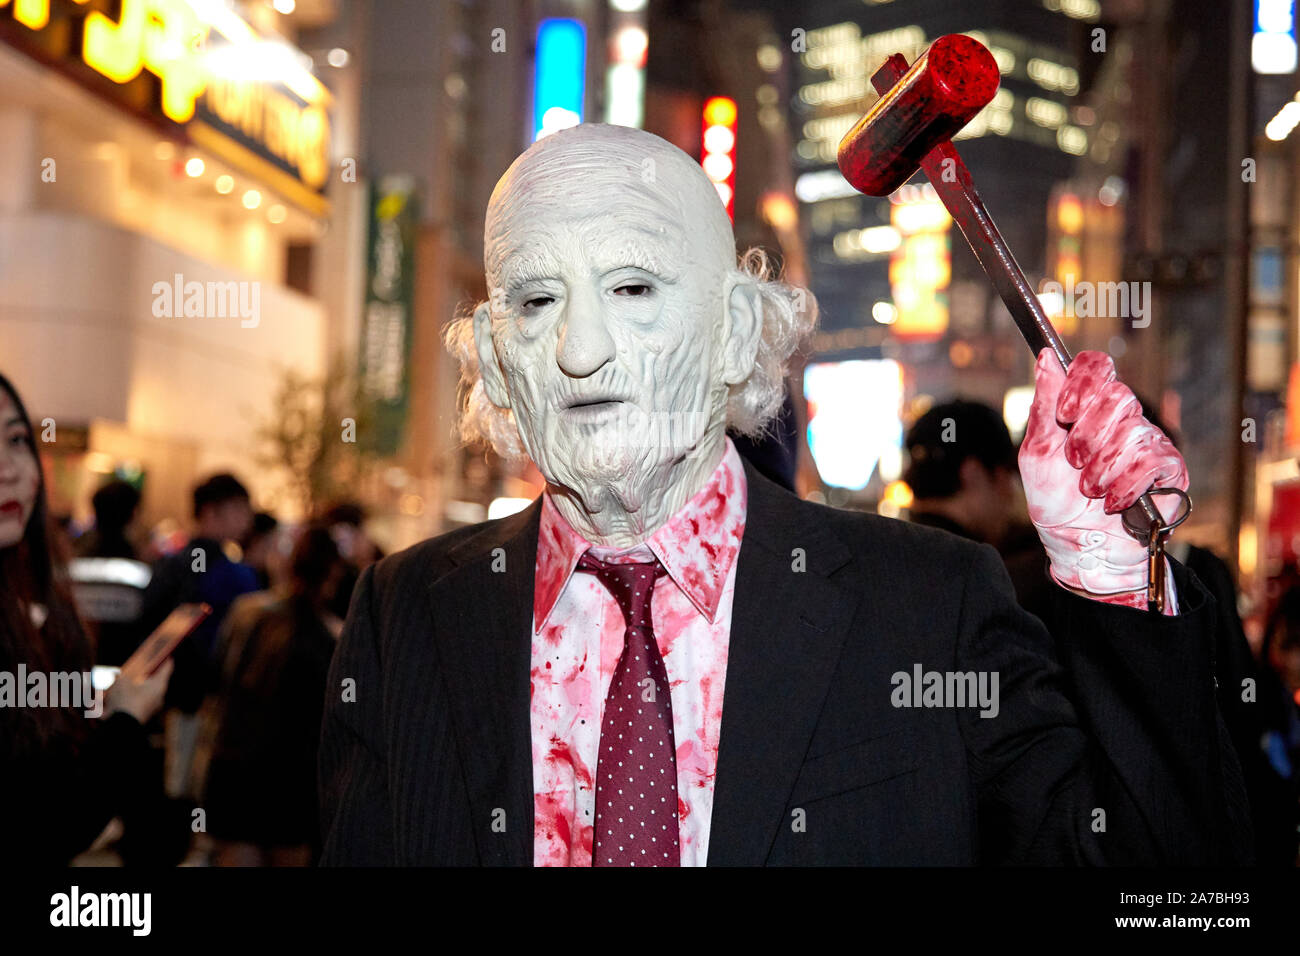 Menschen in Tracht feiern Halloween in Shibuya Entertainment District in Tokio, Japan am 31. Oktober 2019. Quelle: LBA/Alamy leben Nachrichten Stockfoto